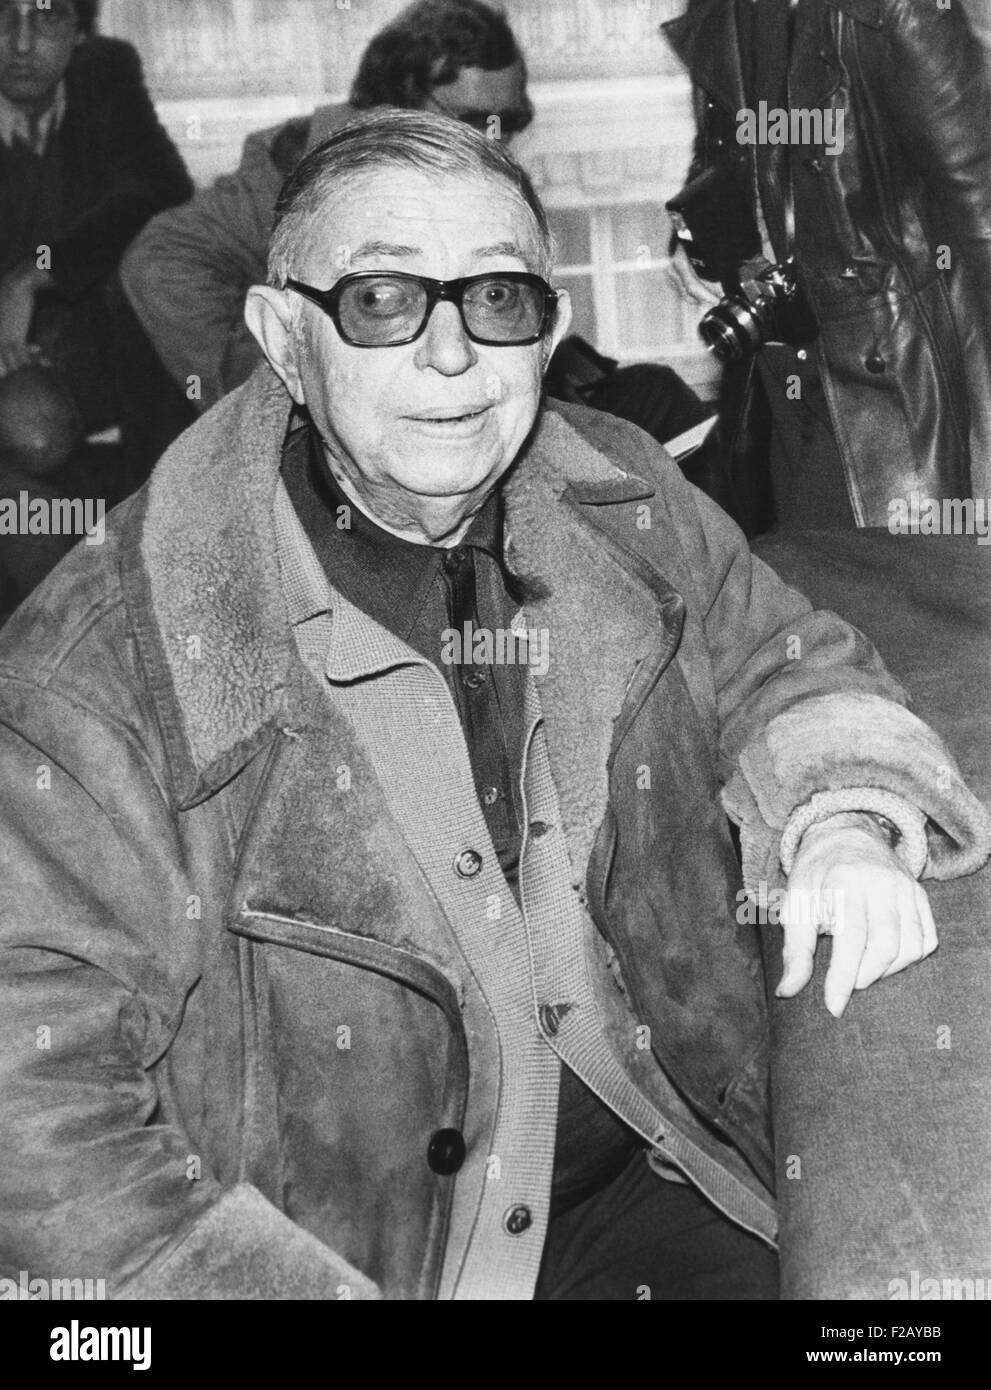 Jean Paul Sartre en una conferencia de prensa en París, el 10 de diciembre de 1974. Sartre fue el primer Premio Nobel a rechazar voluntariamente el premio en 1964, porque "un escritor no debe permitir a sí mismo para convertirse en una institución". También se negó a la Legión de Honor en 1945. (CSU 2015 9 794) Foto de stock